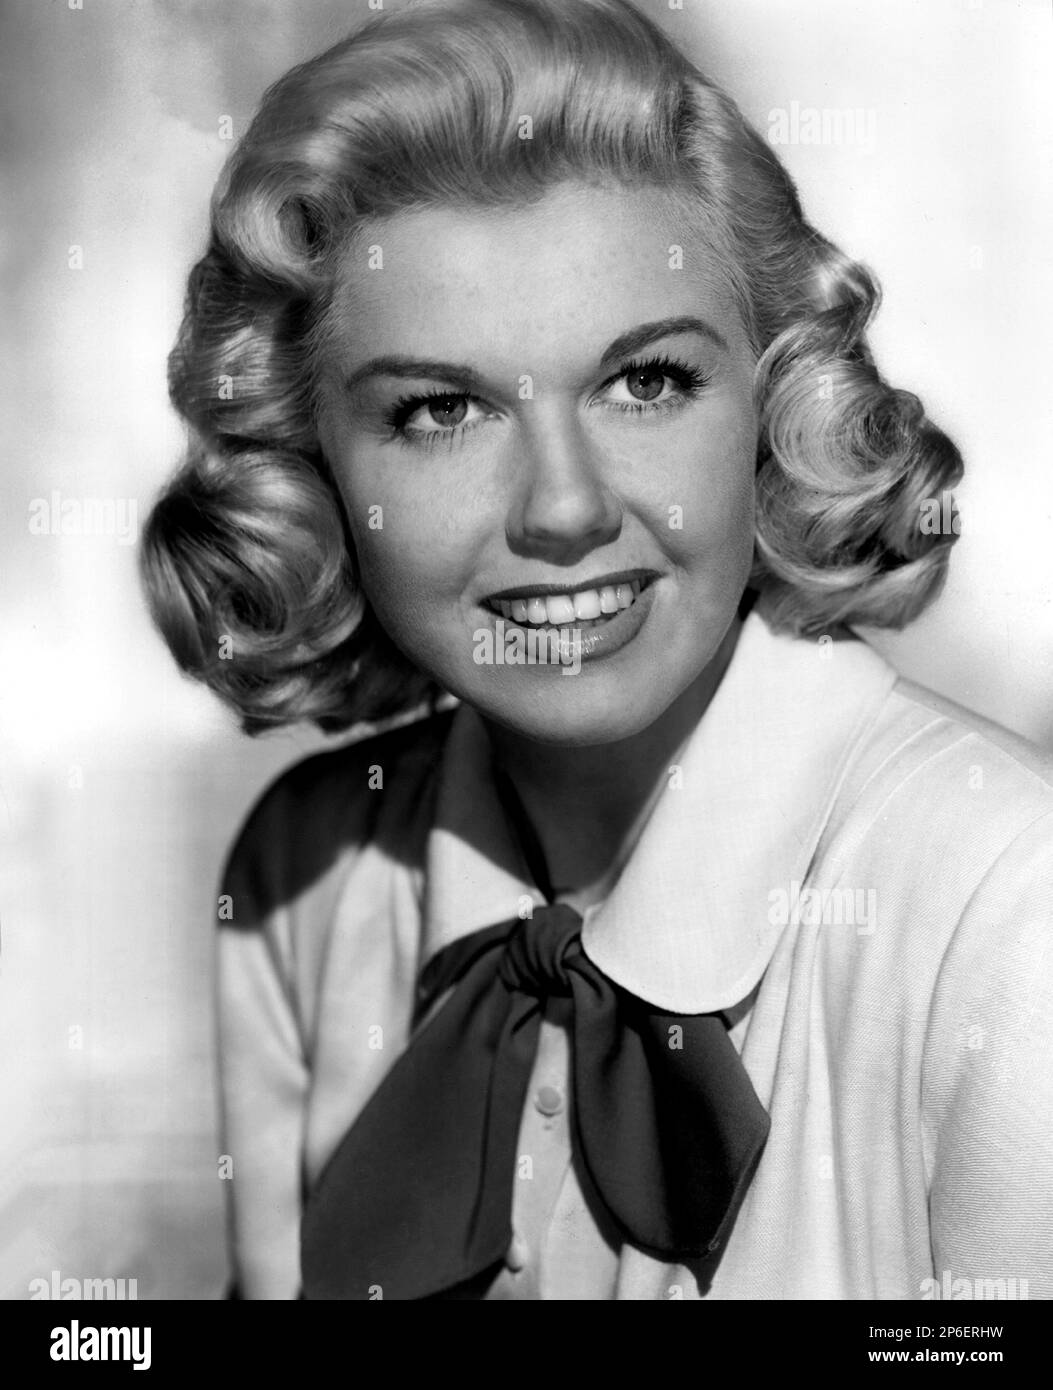 1949 ca : l'actrice et chanteuse DORIS DAY ( nom réel Doris Mary Ann Kappelhoff , née le 3 avril 1924 Cincinnati, Ohio, Etats-Unis ) dans un film pubblicity STILL - FILM - FILM - atrice cimatografica - blonde - bionda - sourire - sorriso - collier - colletto -- -- Archivio GBB Banque D'Images